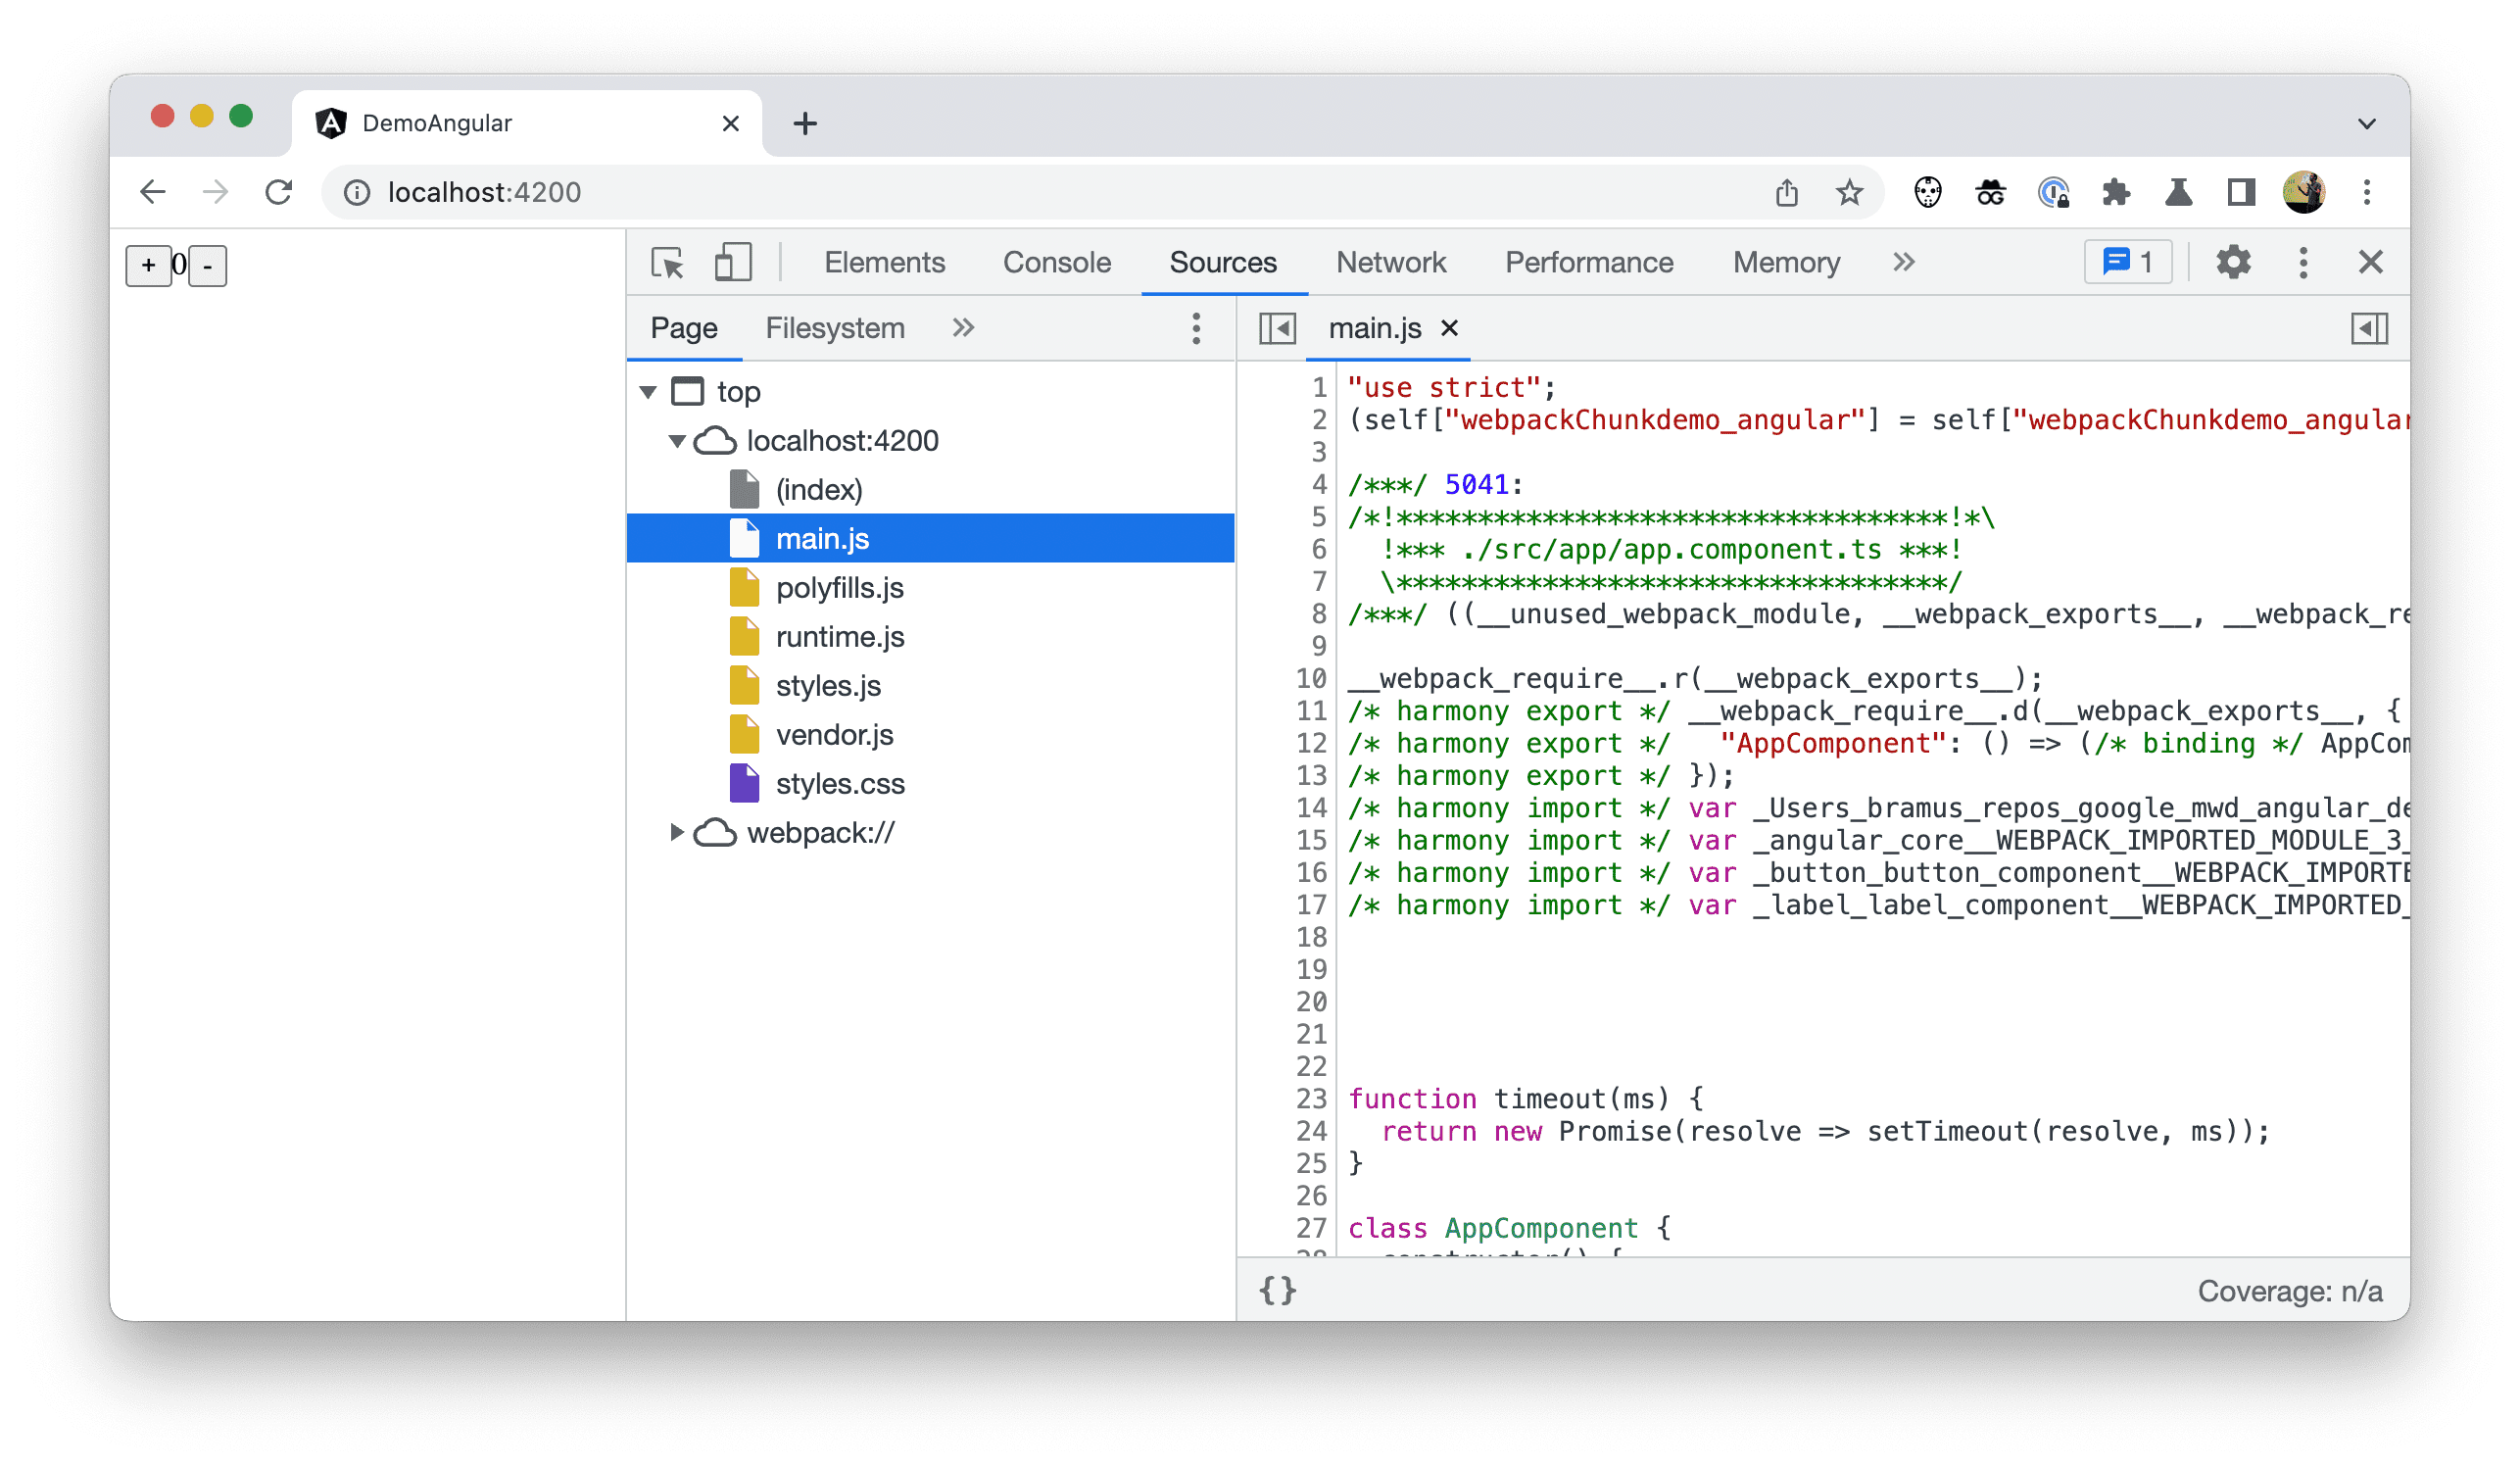 Captura de tela da árvore de arquivos no Chrome DevTools mostrando o código implantado.